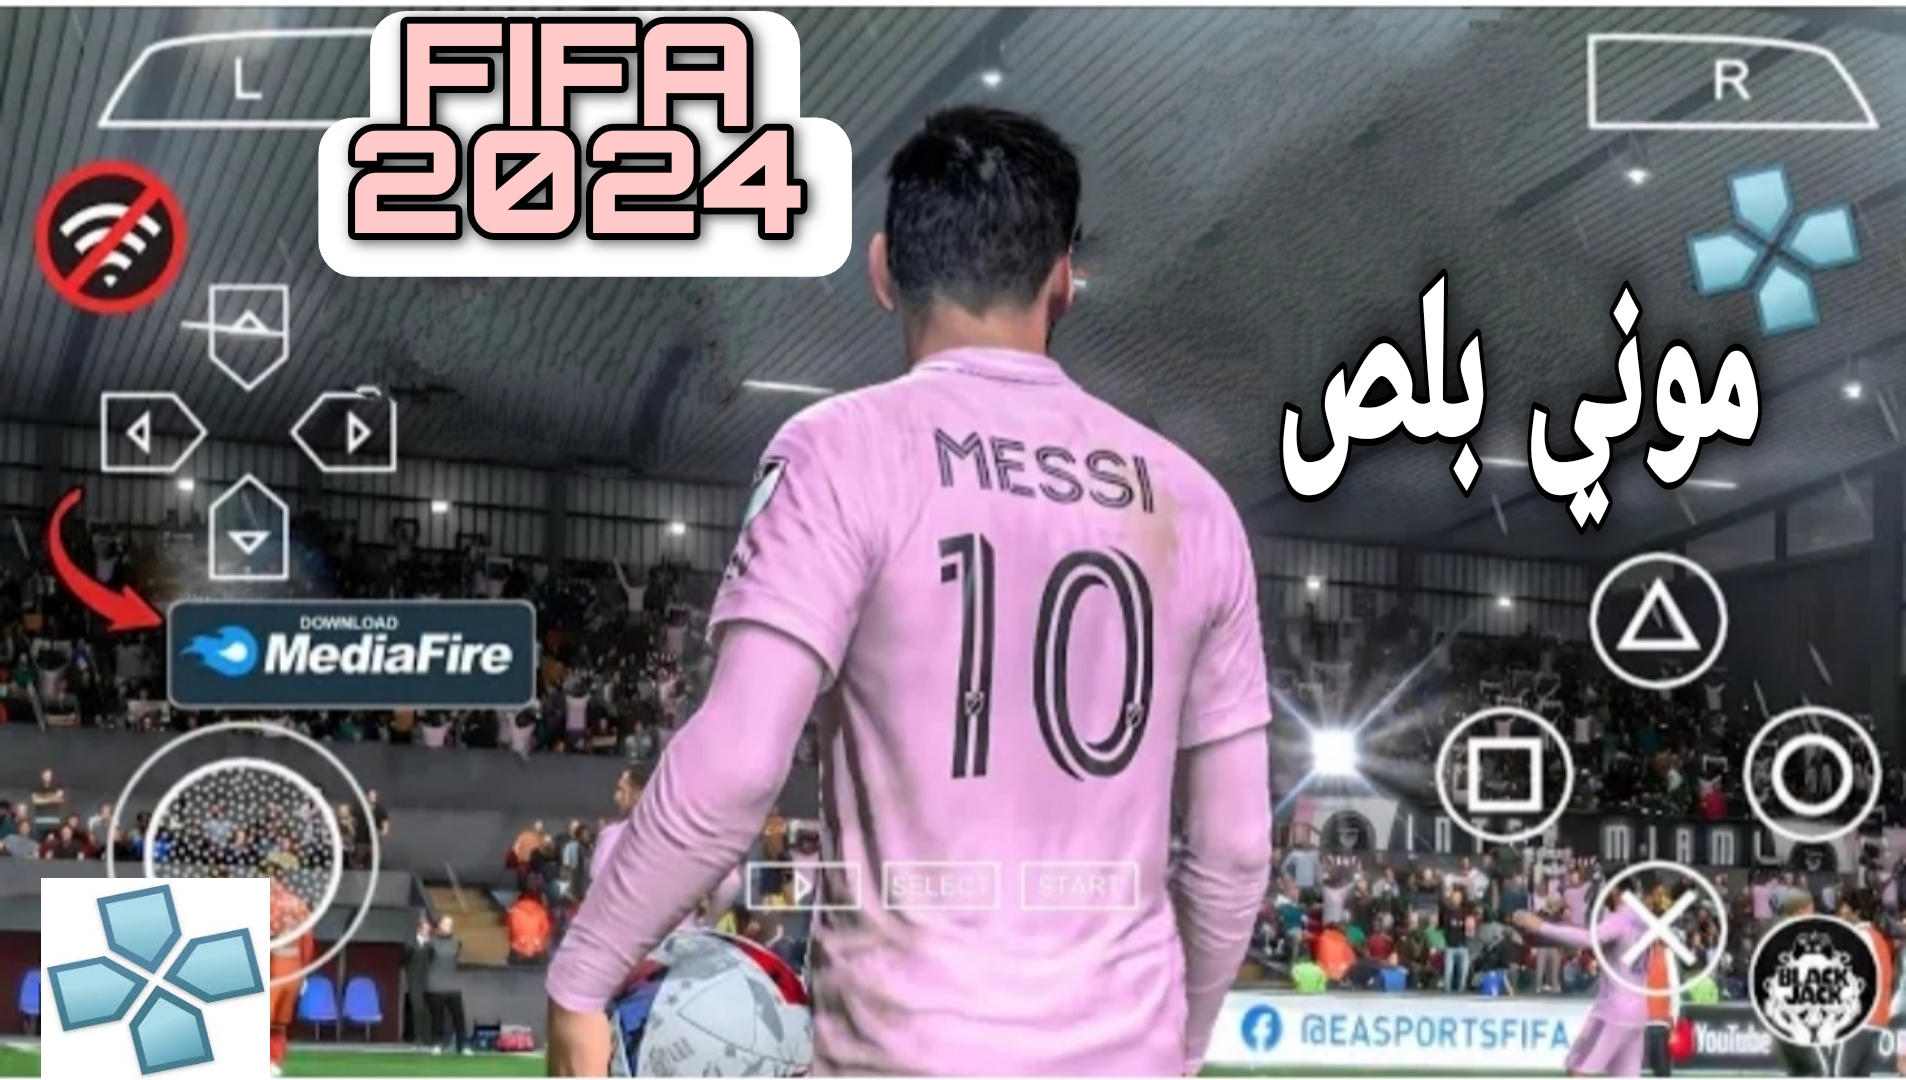 تحميل لعبة فيفا FIFA 2024 ppsspp بالتعليق العربي بدون نت للاندرويد من